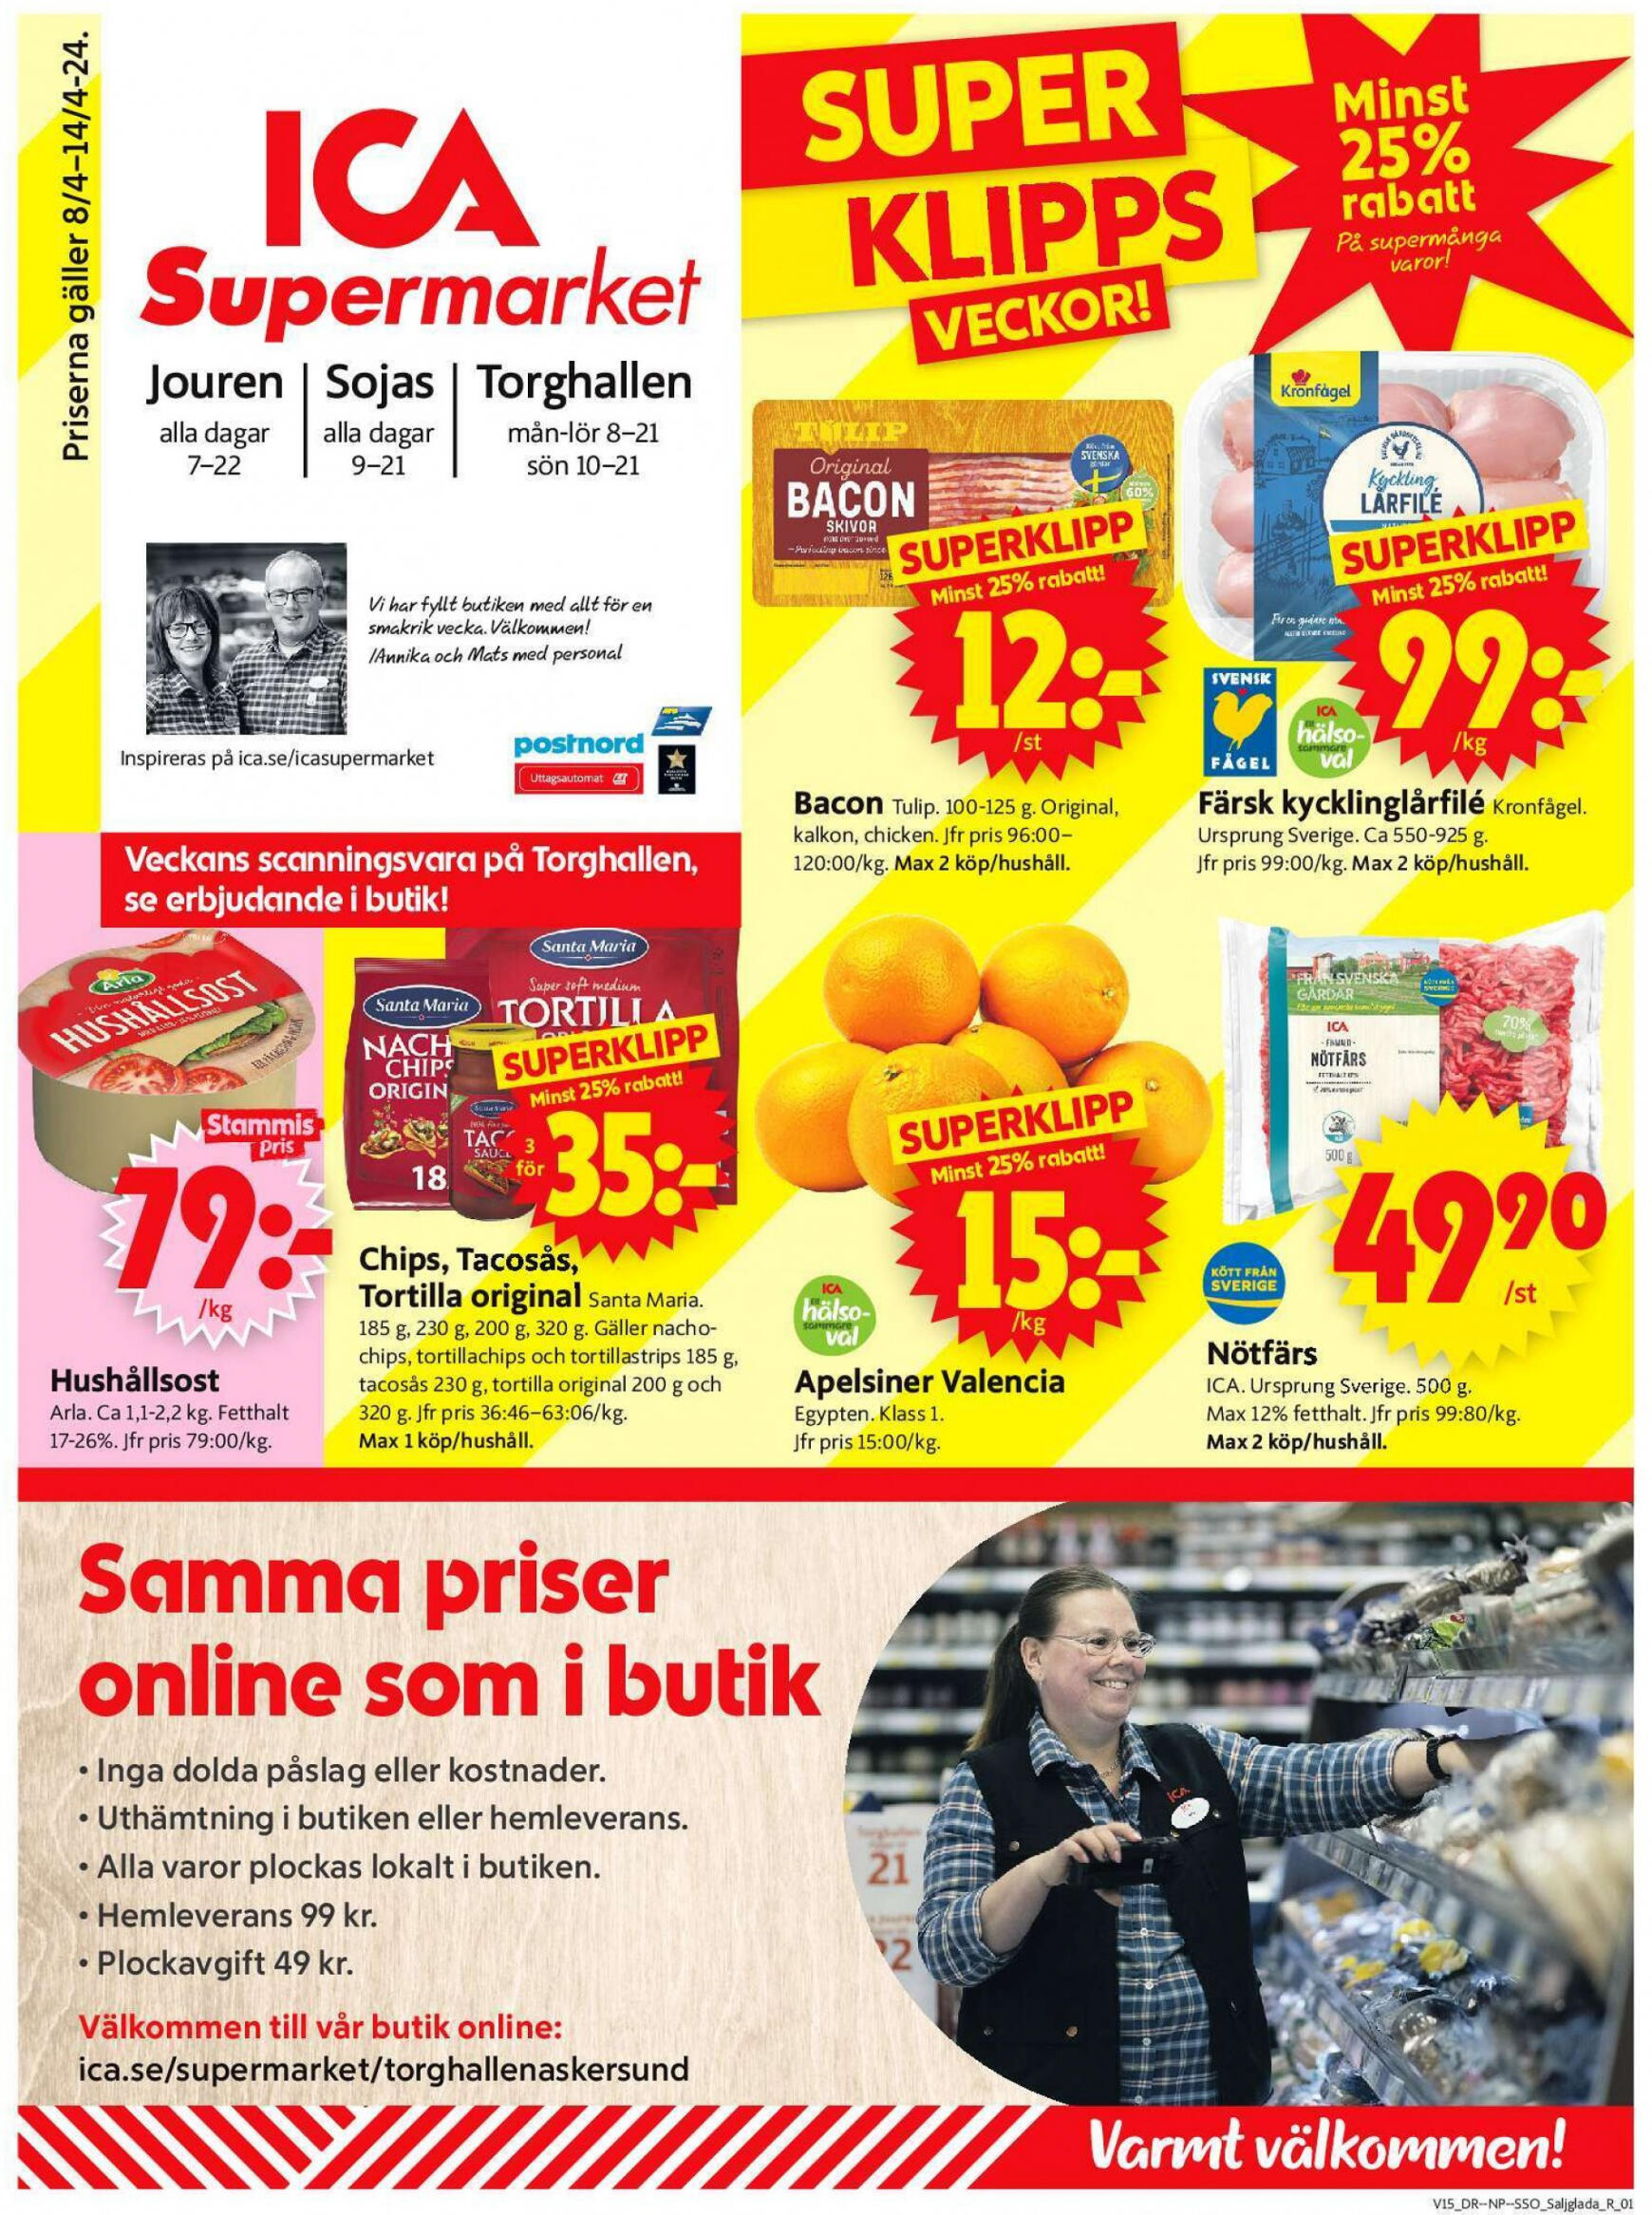 ica-supermarket - Flyer ICA Supermarket current 08.04. - 14.04.